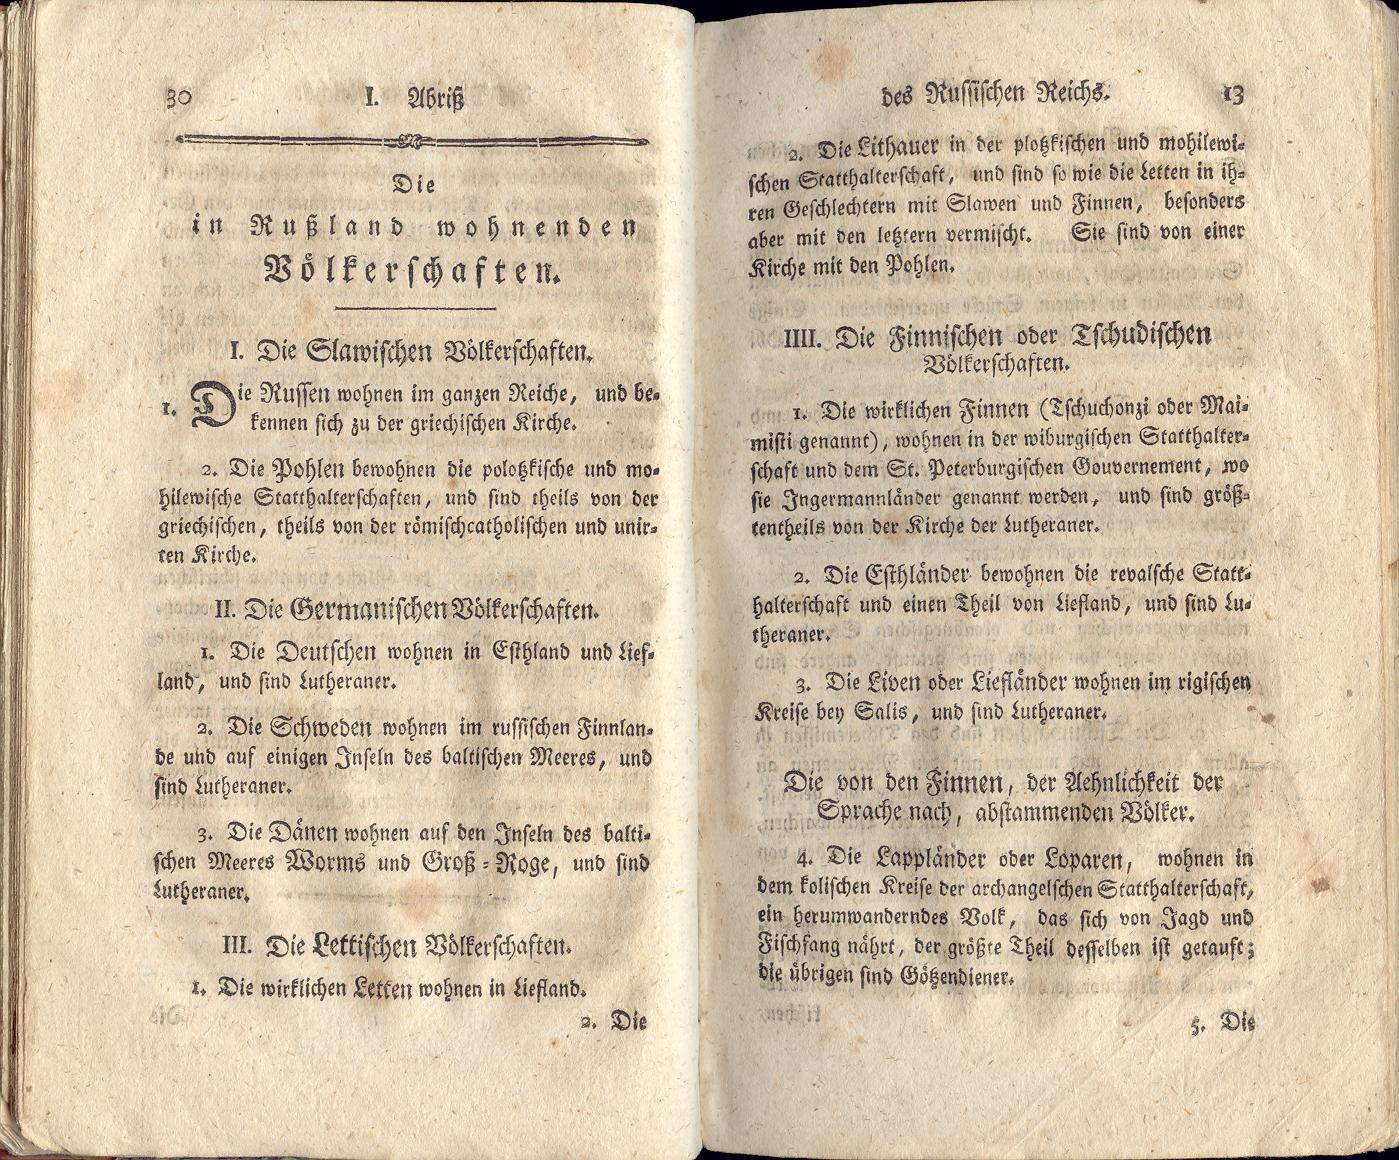 Uebersicht des Russischen Reichs (1790) | 20. (30-31) Main body of text